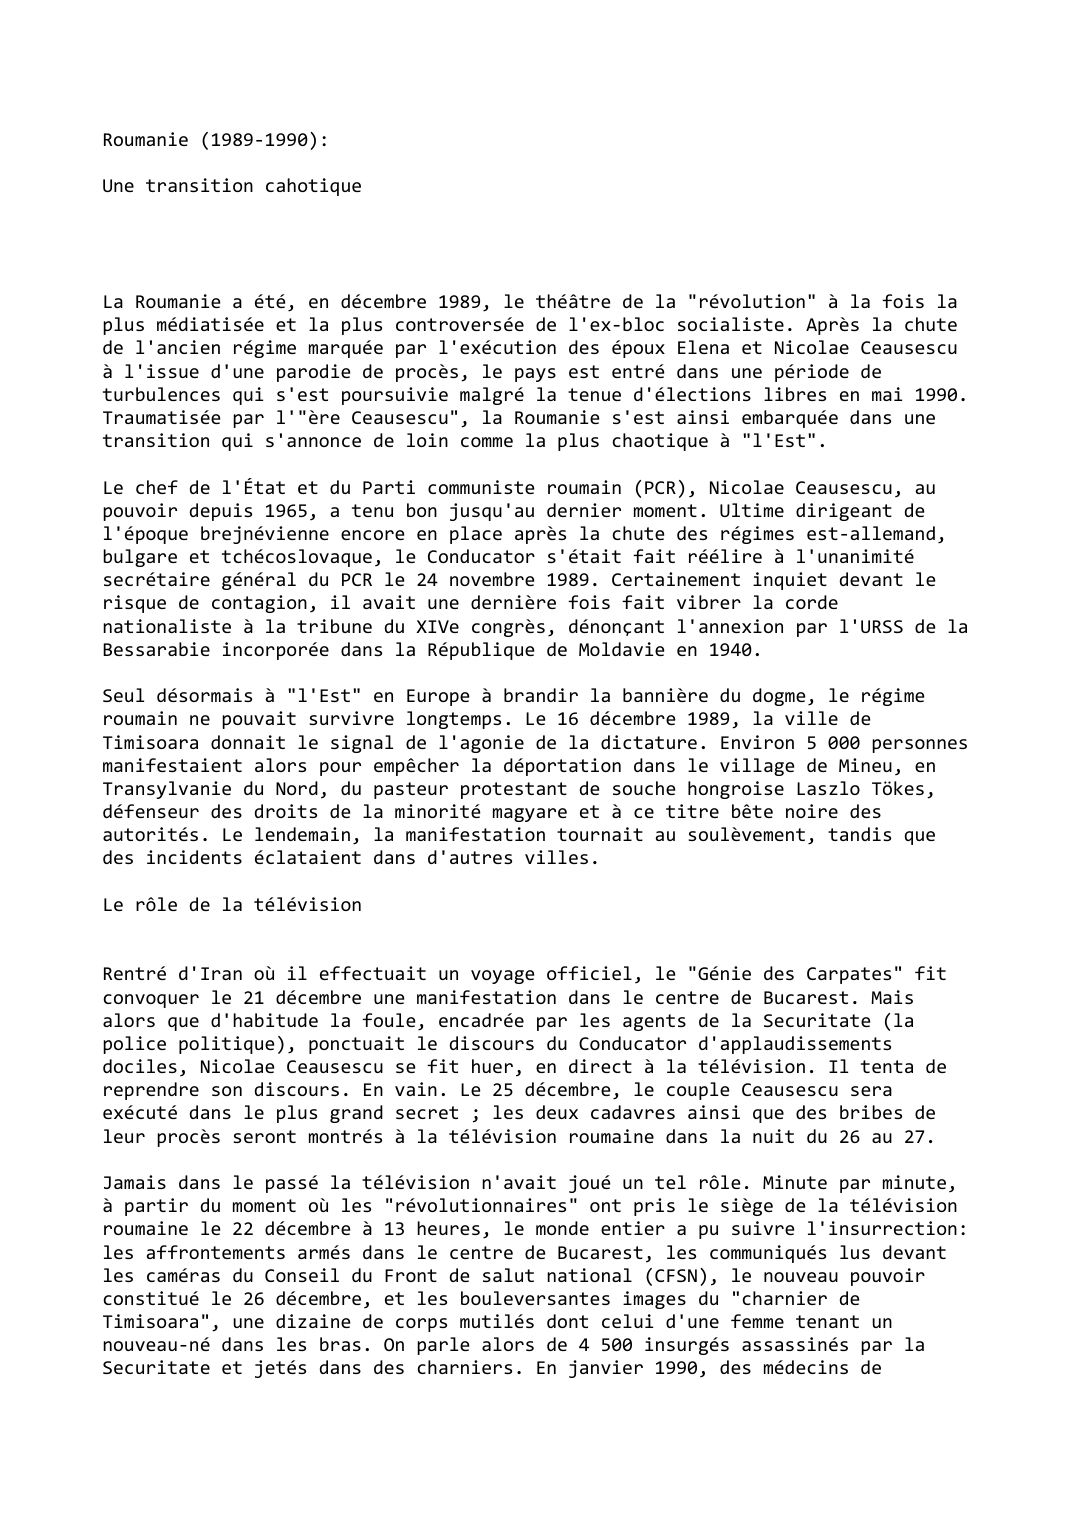 Prévisualisation du document Roumanie (1989-1990):

Une transition cahotique